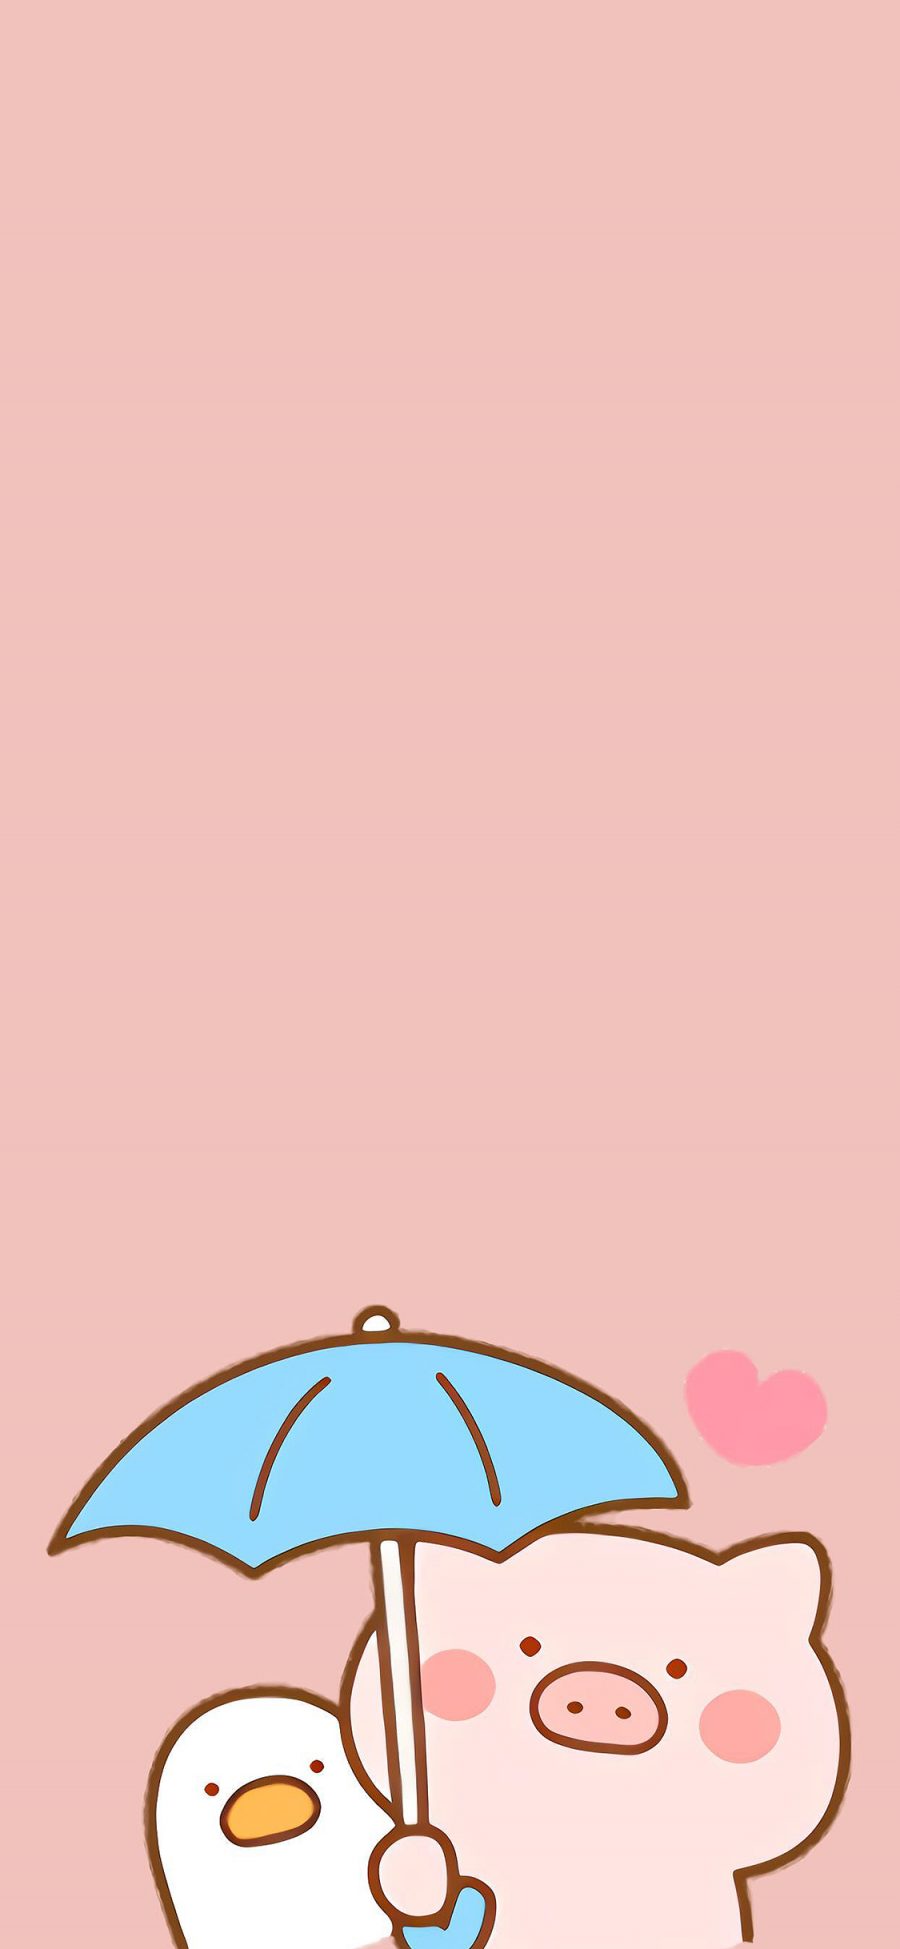 [2436×1125]猪 粉色 可爱 卡通 爱心 撑伞 苹果手机动漫壁纸图片